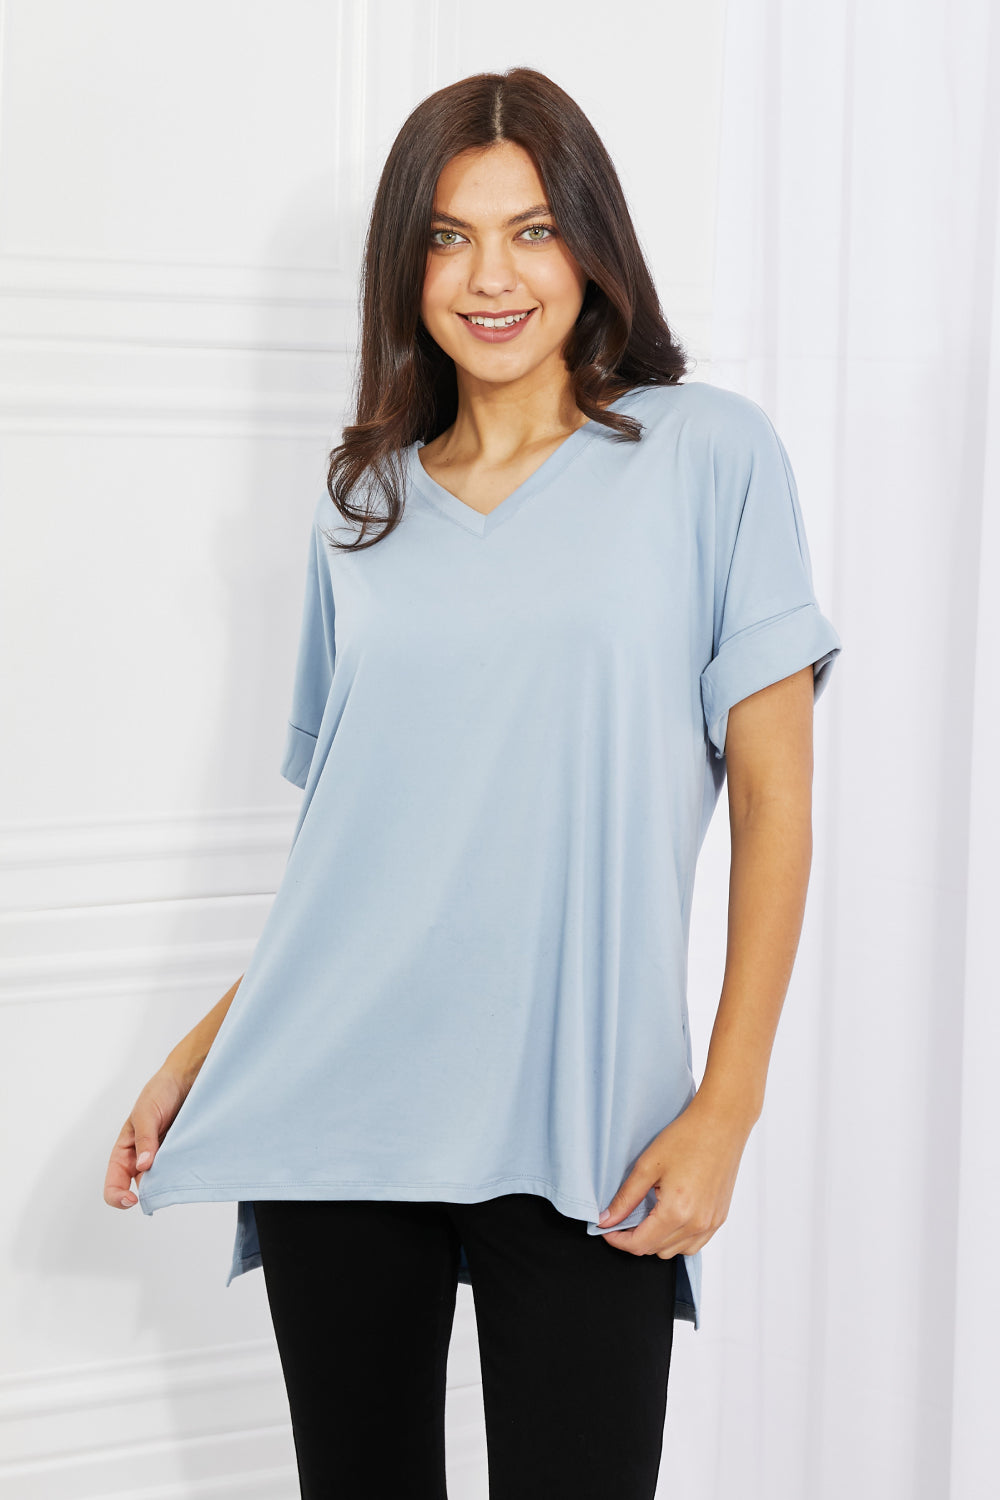 Cotton V-Neck Women's Plain Sky Blue T-Shirt front